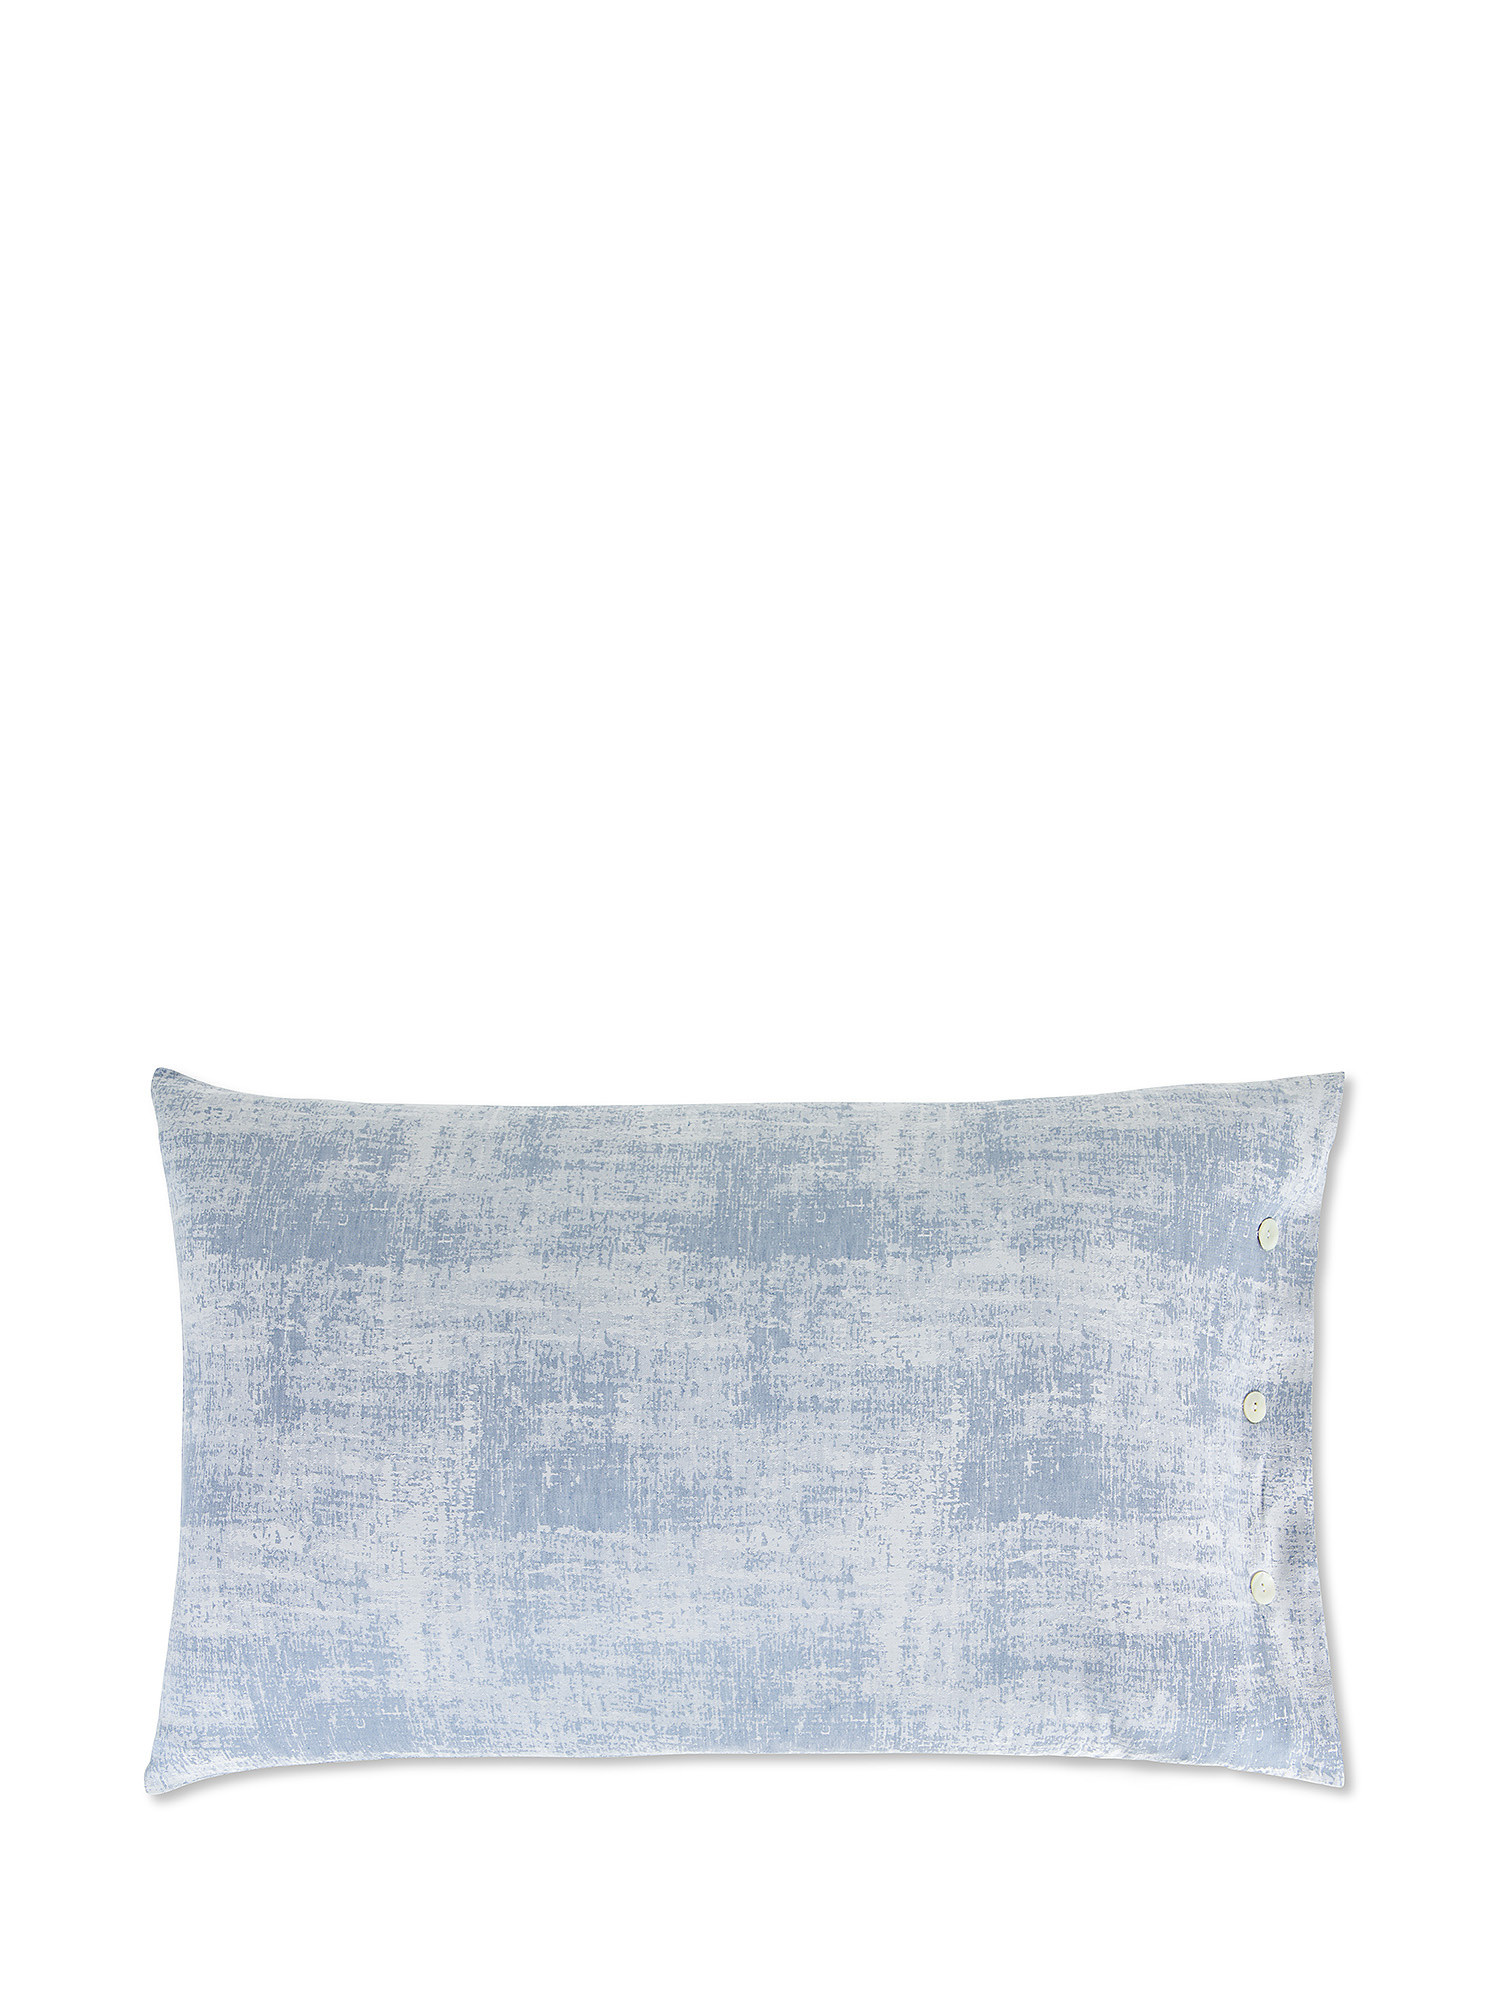 Denim effect washed linen blend pillowcase, Light Blue, large image number 0